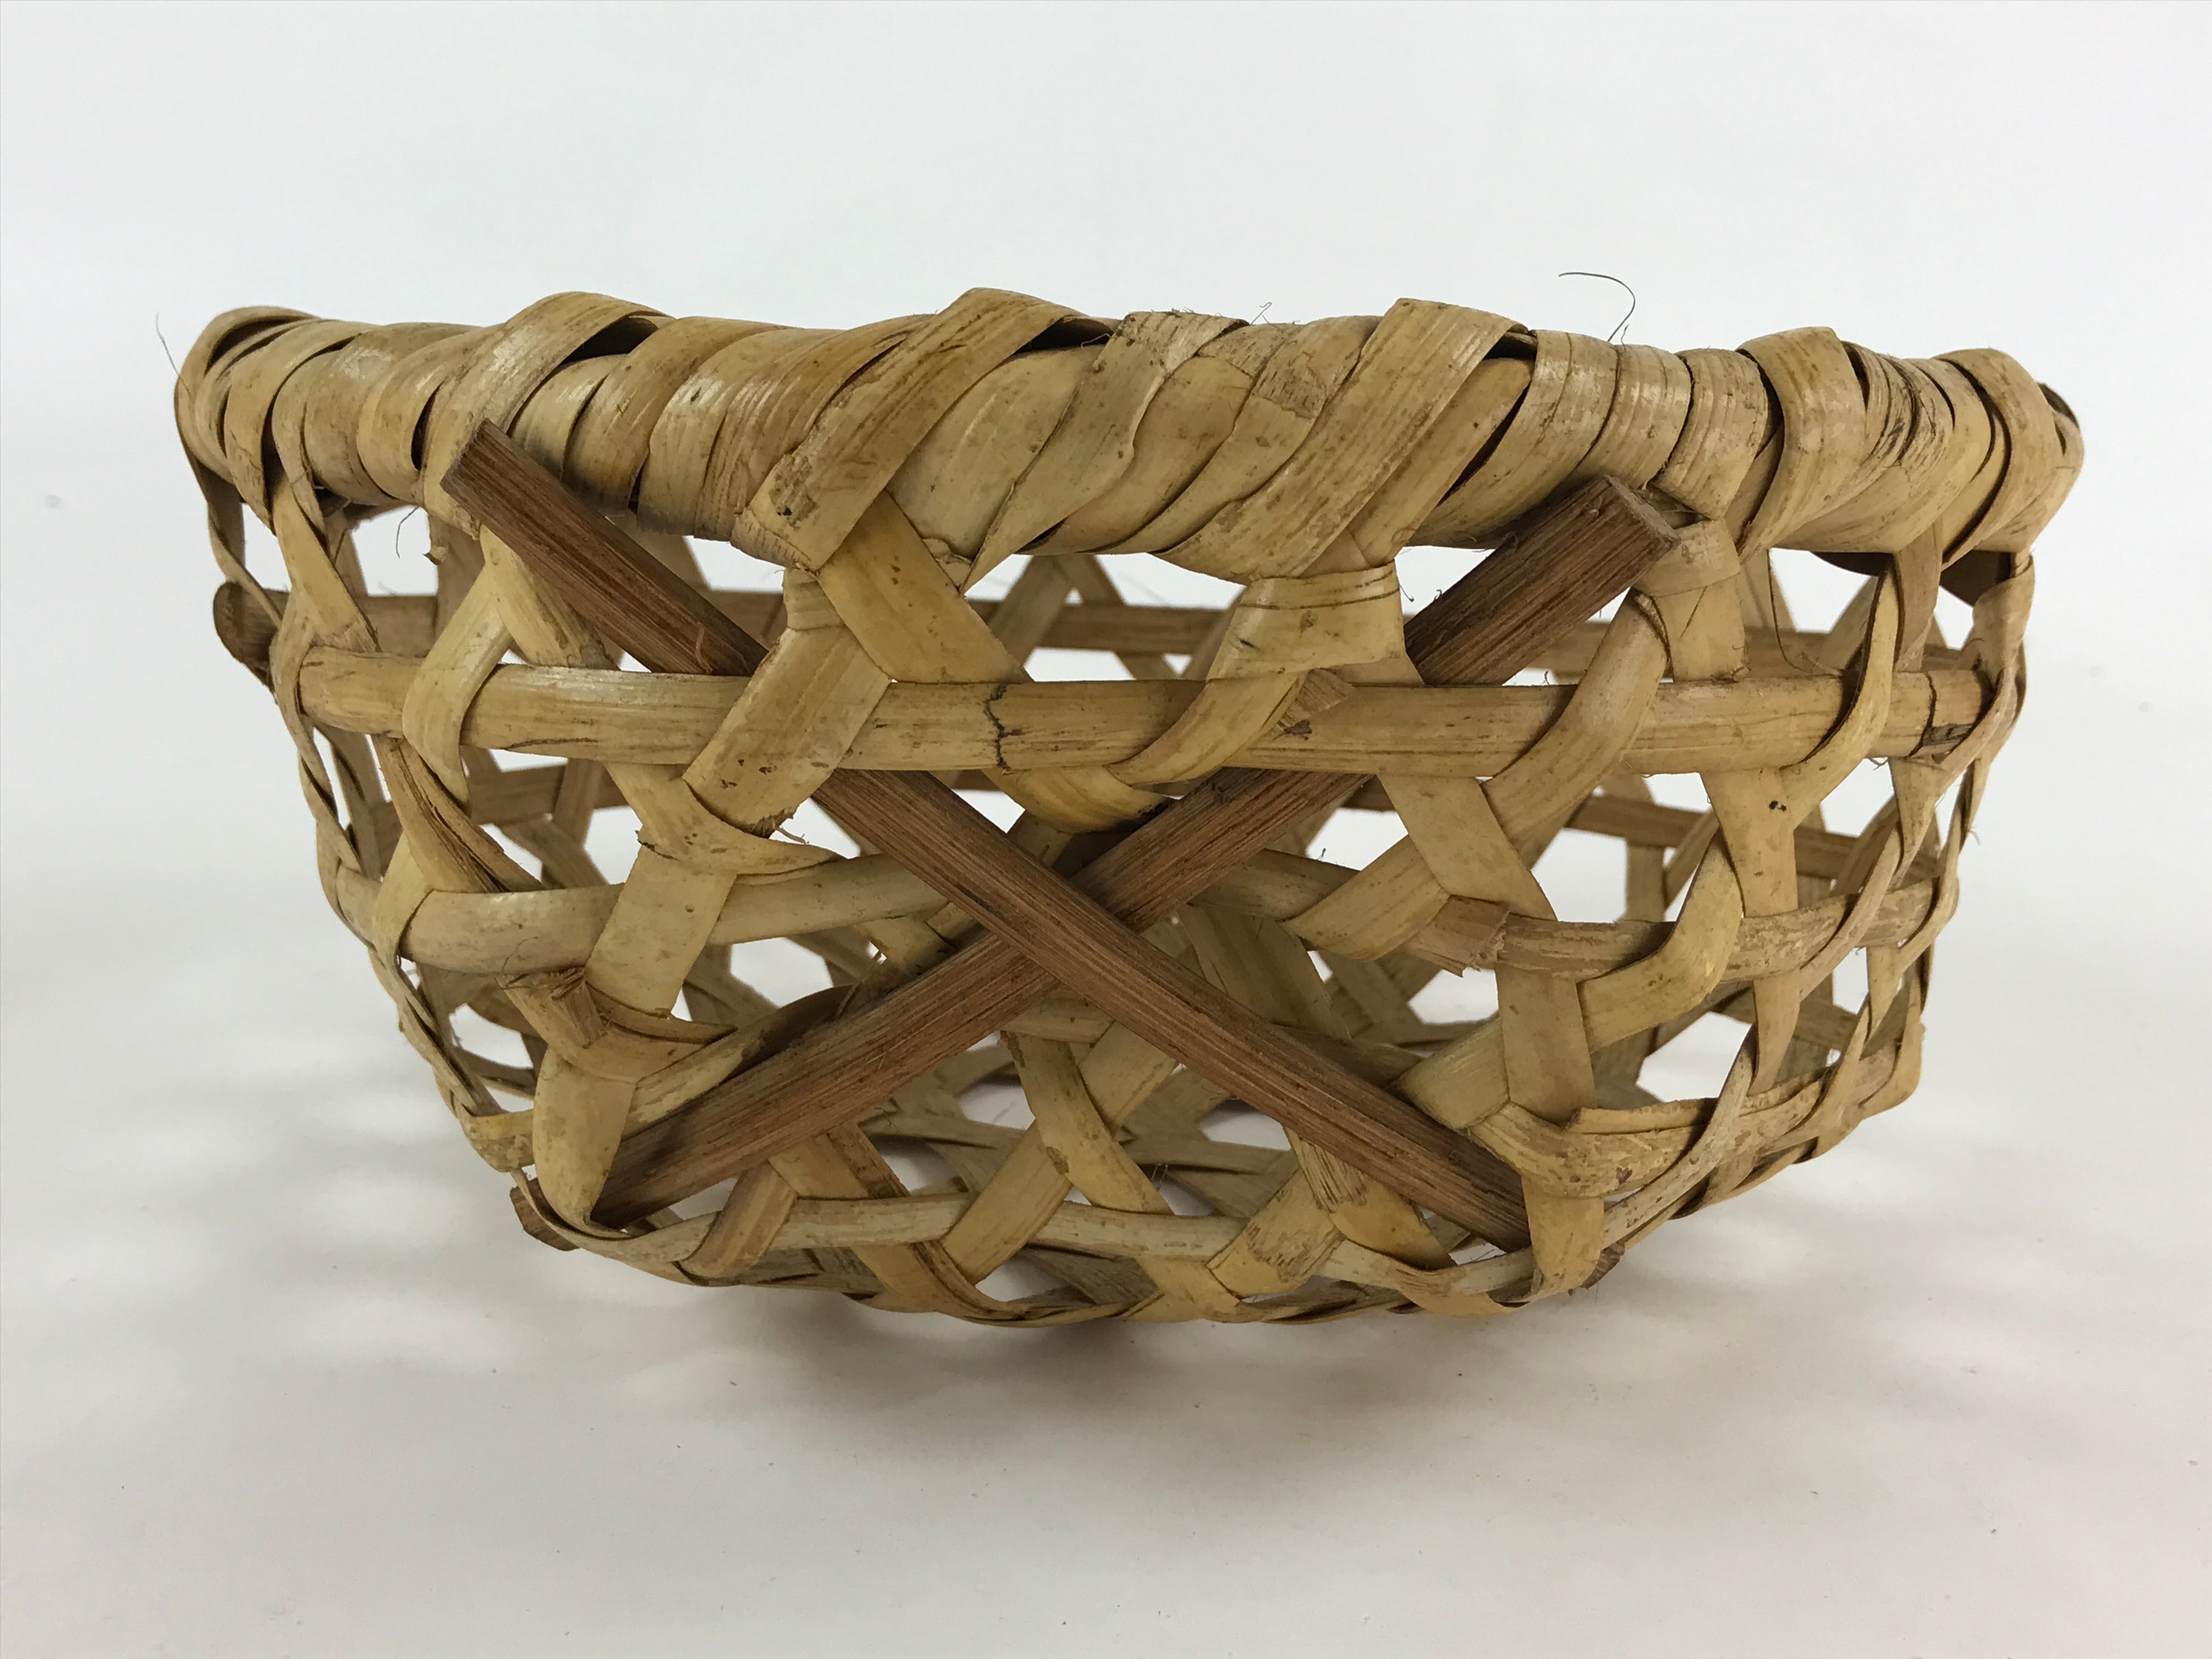 Bamboo Basket Drawstring Bag - White x Green – Kyoto Maruhisa